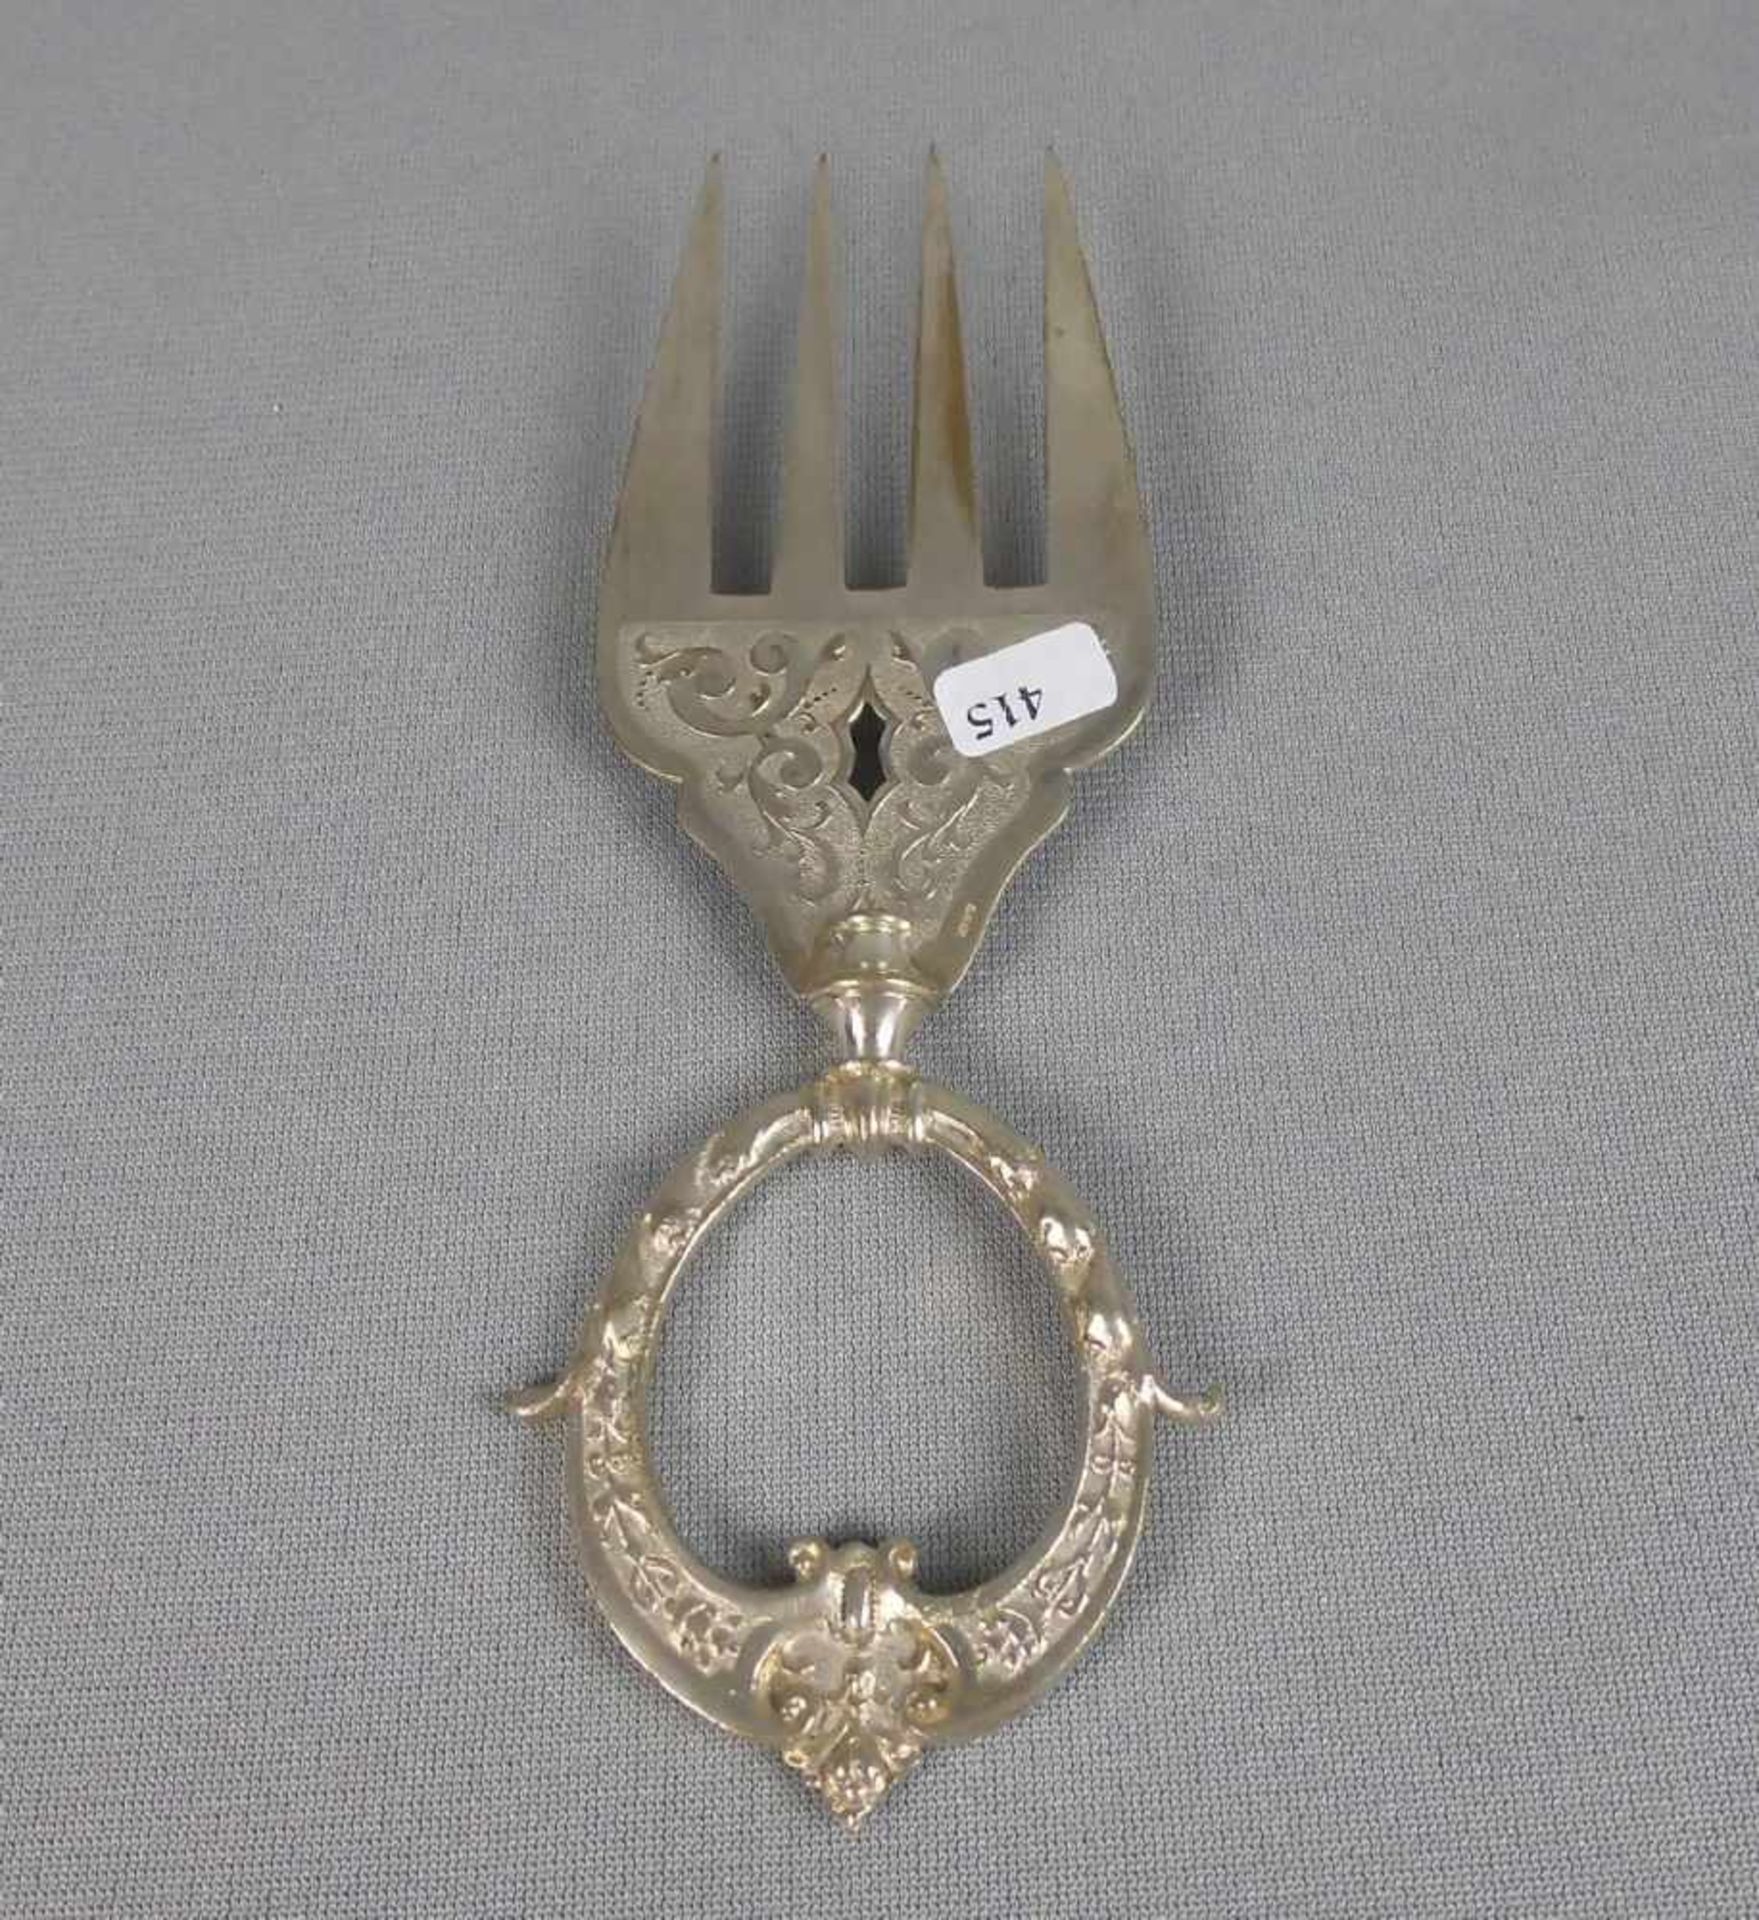 VORLEGEGABEL / serving fork, deutsch, Historismus, gem. "W.M.N.N" (Marke um 1900),